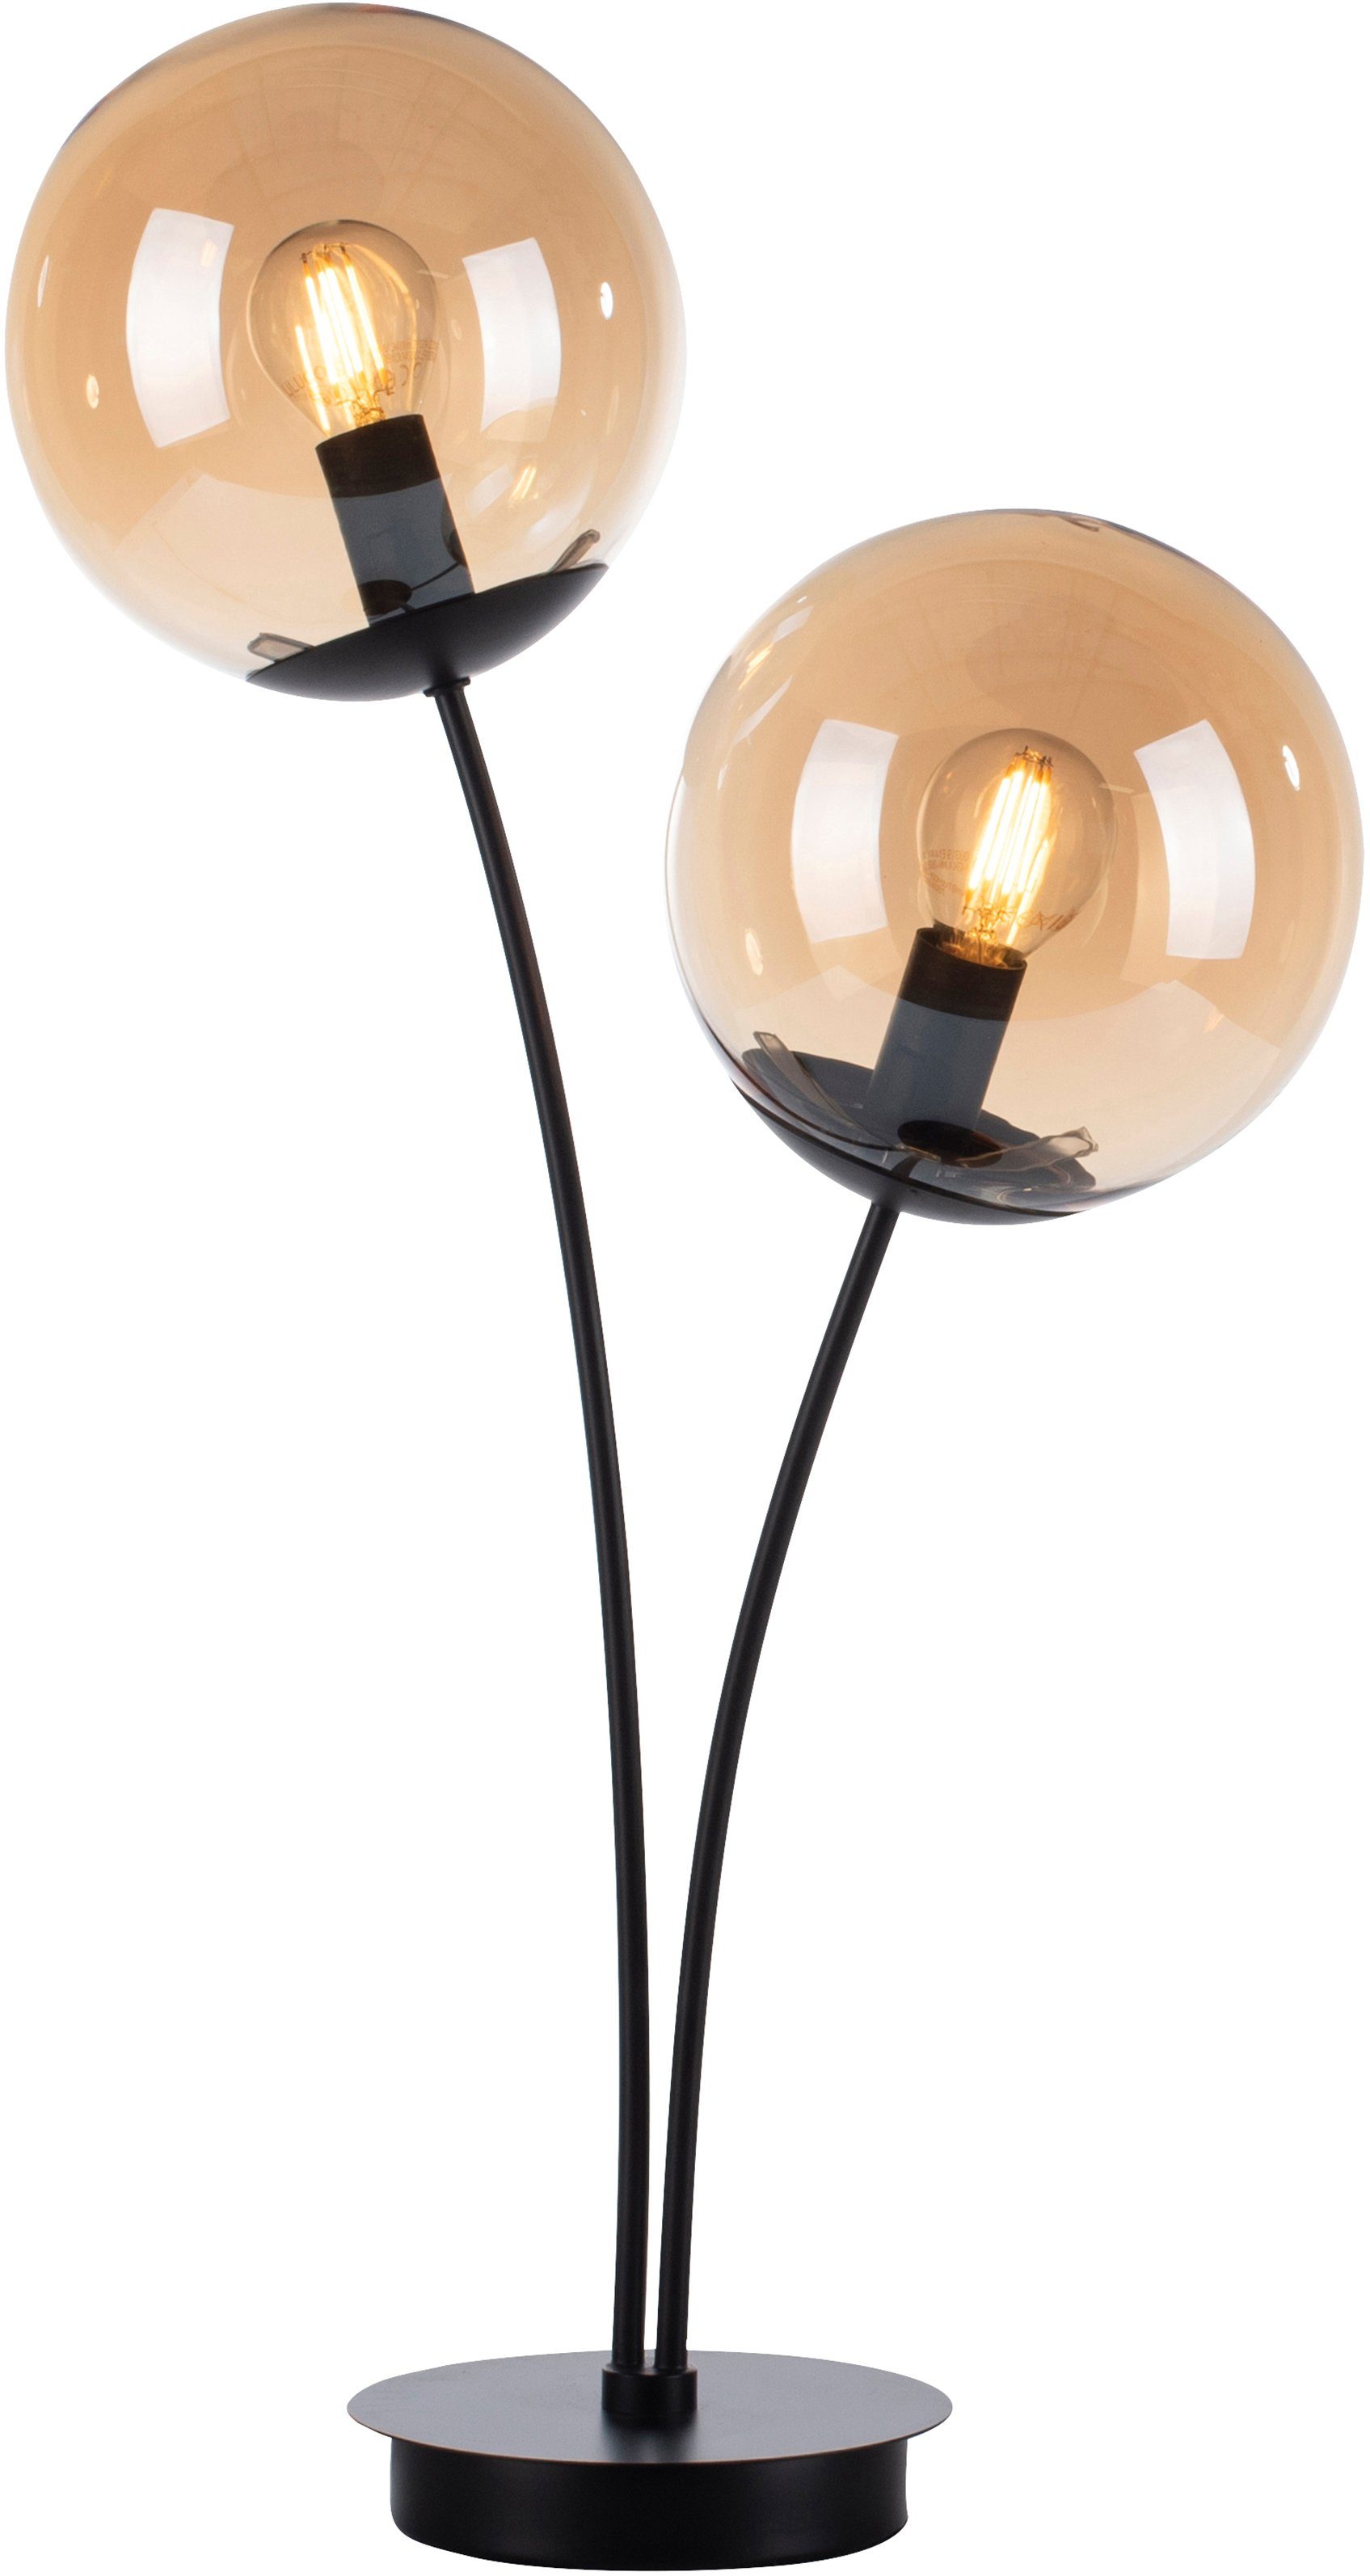 amberfarbigen schwarz großen Leuchtmittel, Oberfläche mit andas Nymölla, ohne Glaskörpern, Ein-/Ausschalter, Tischleuchte lackiert